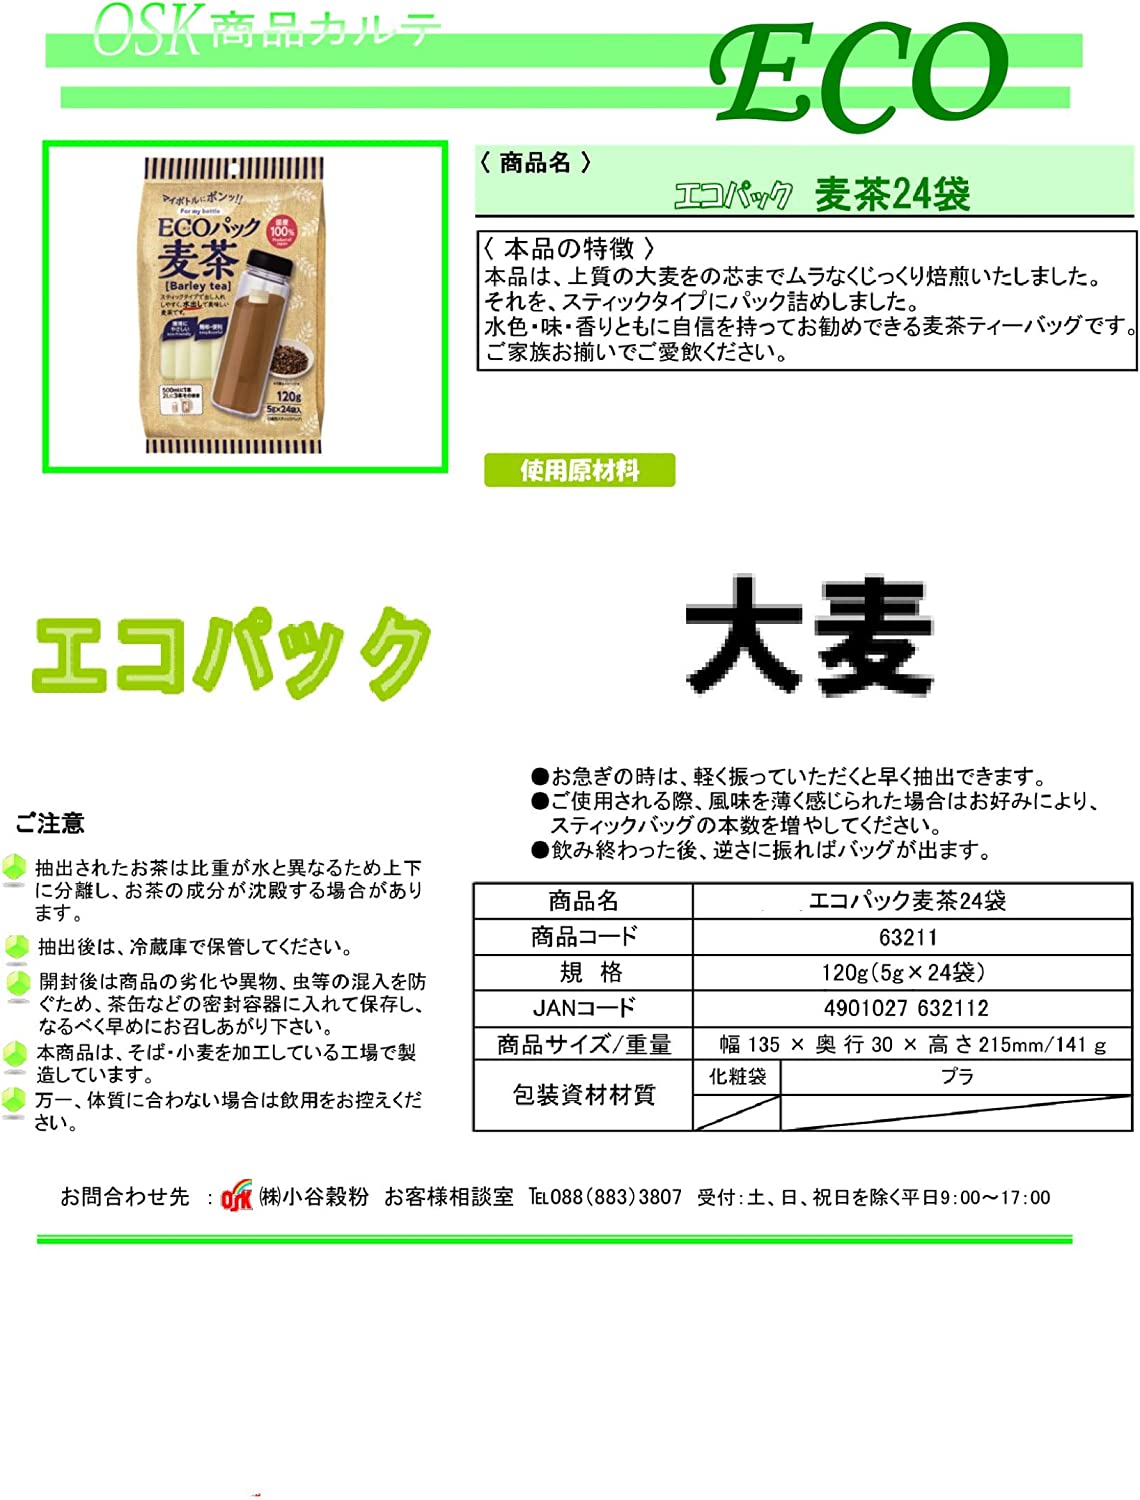 OSK Eco Pack Barley Tea Tea Pack 120g (5g x 24 Teabags) x 5 Packs - NihonMura